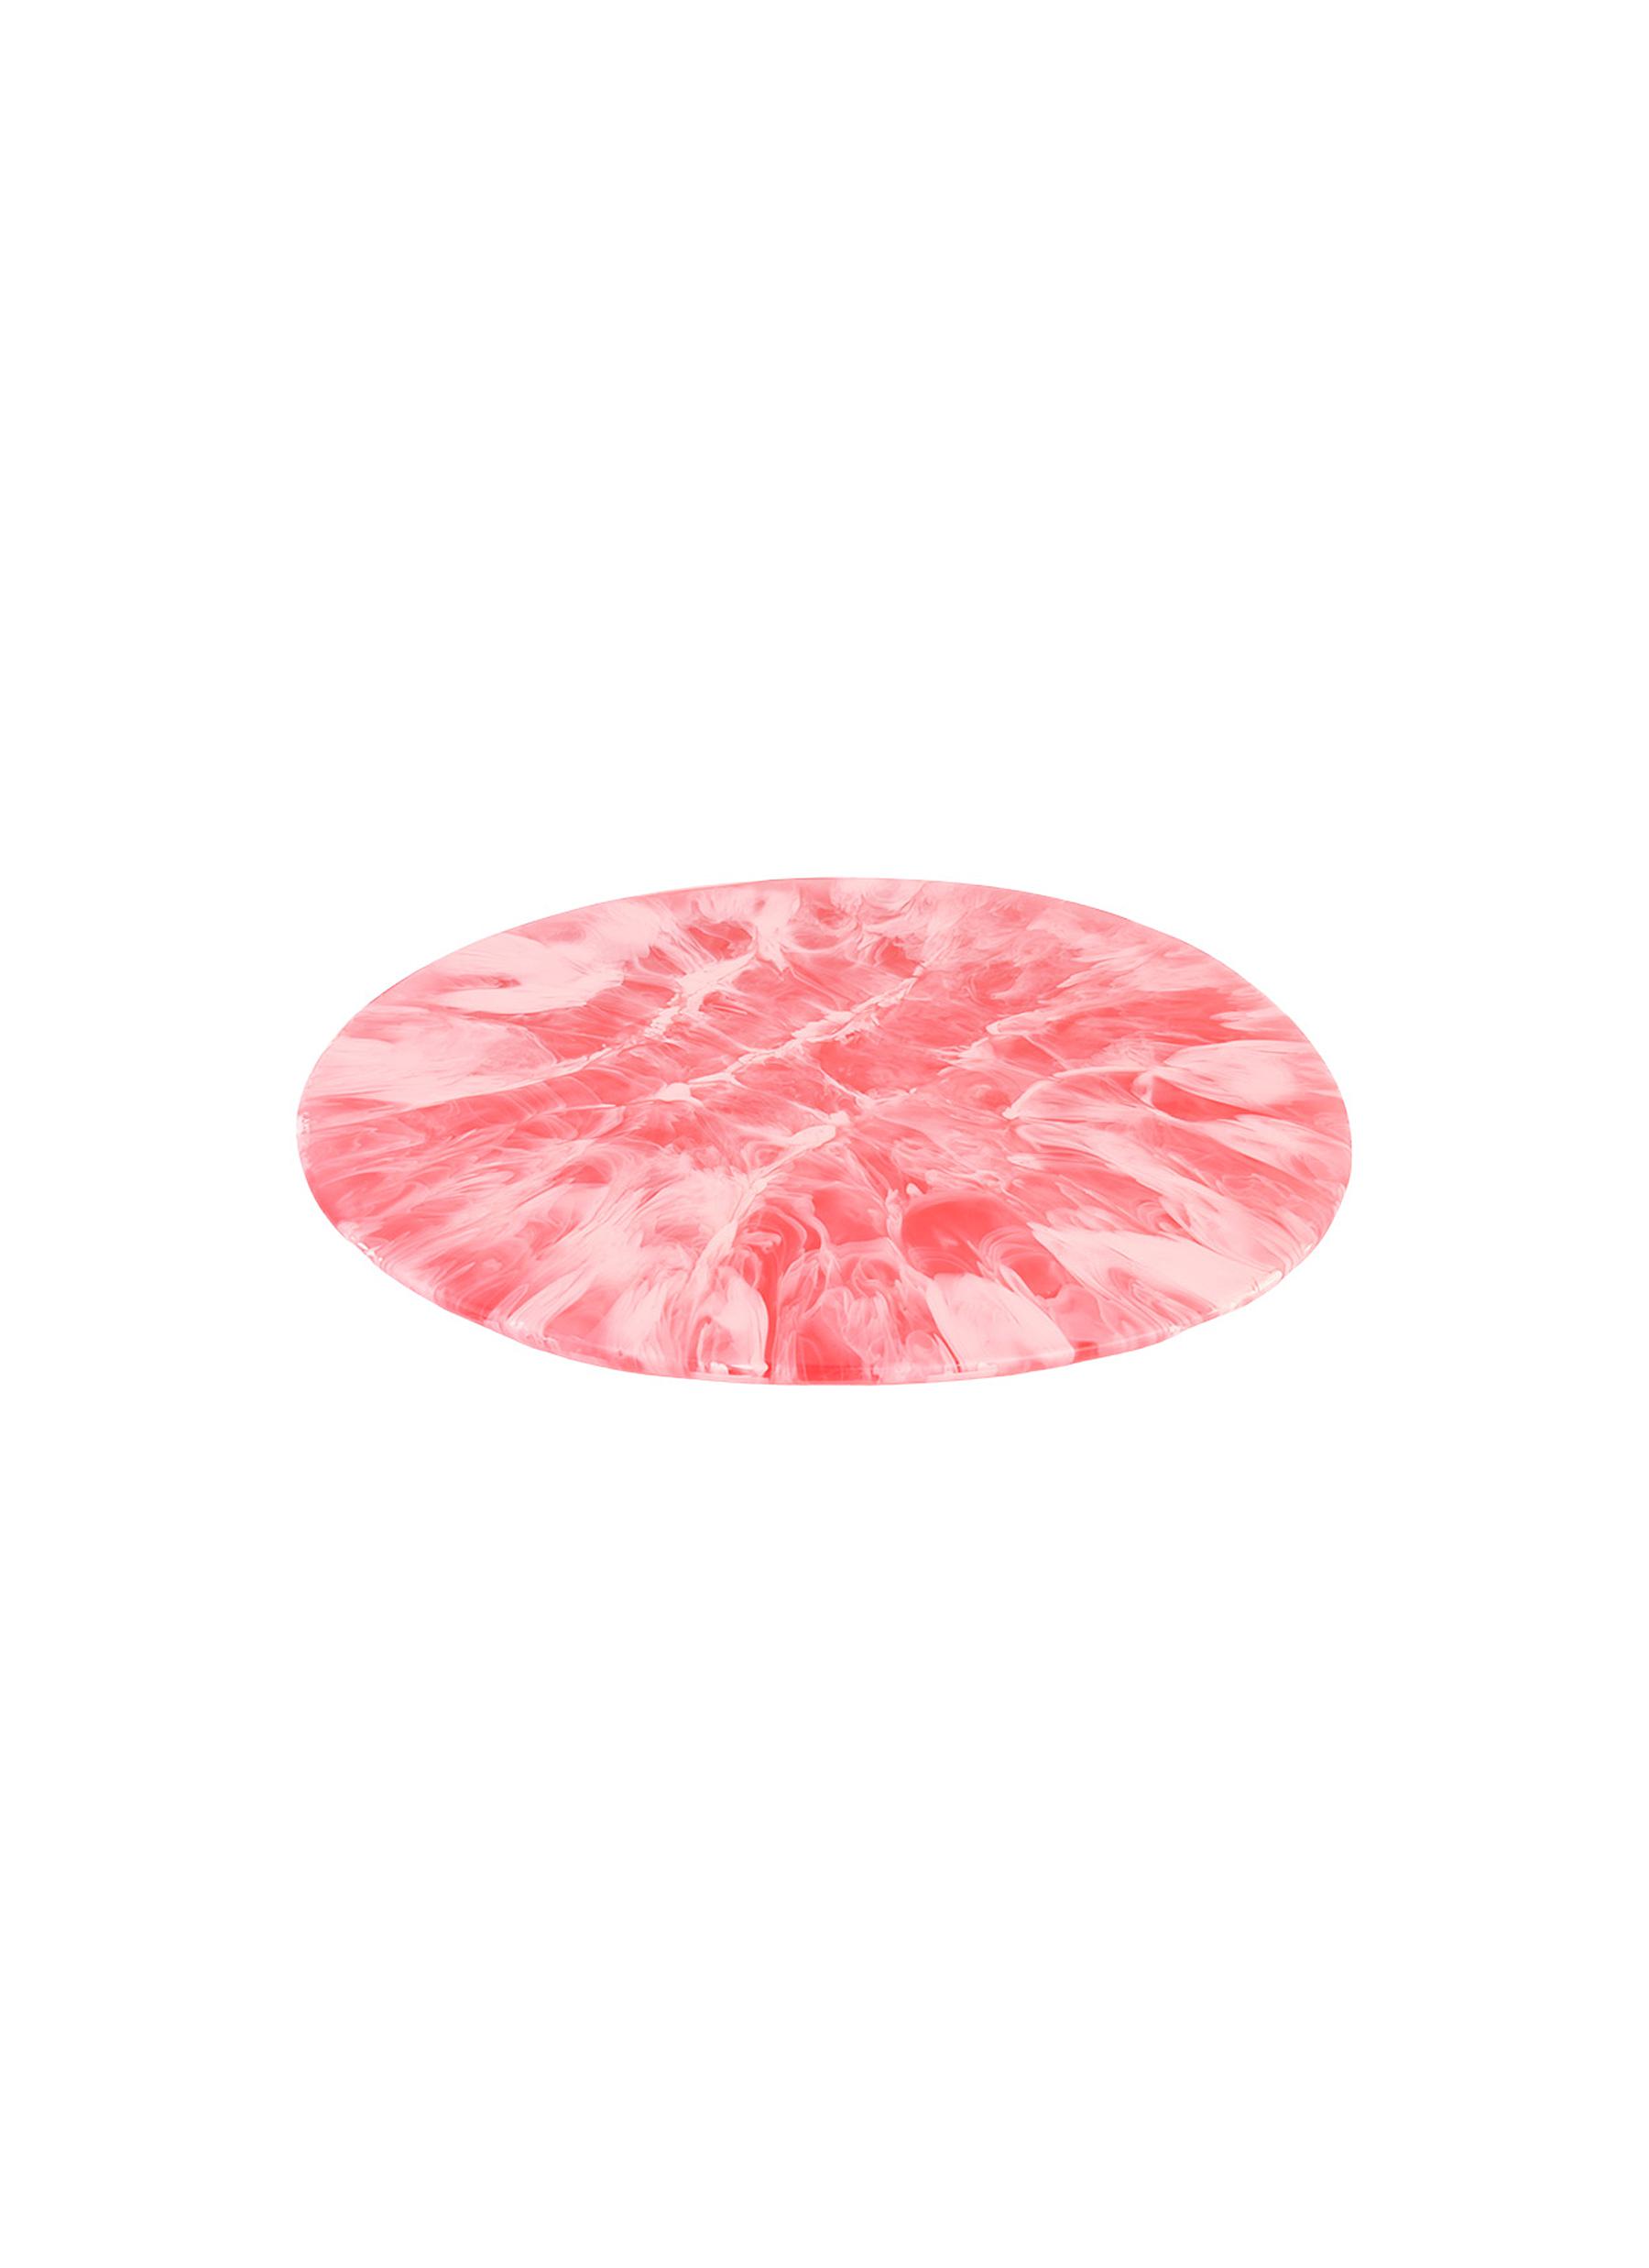 Dinosaur Designs Boulder Medium Platter - Pink Guava